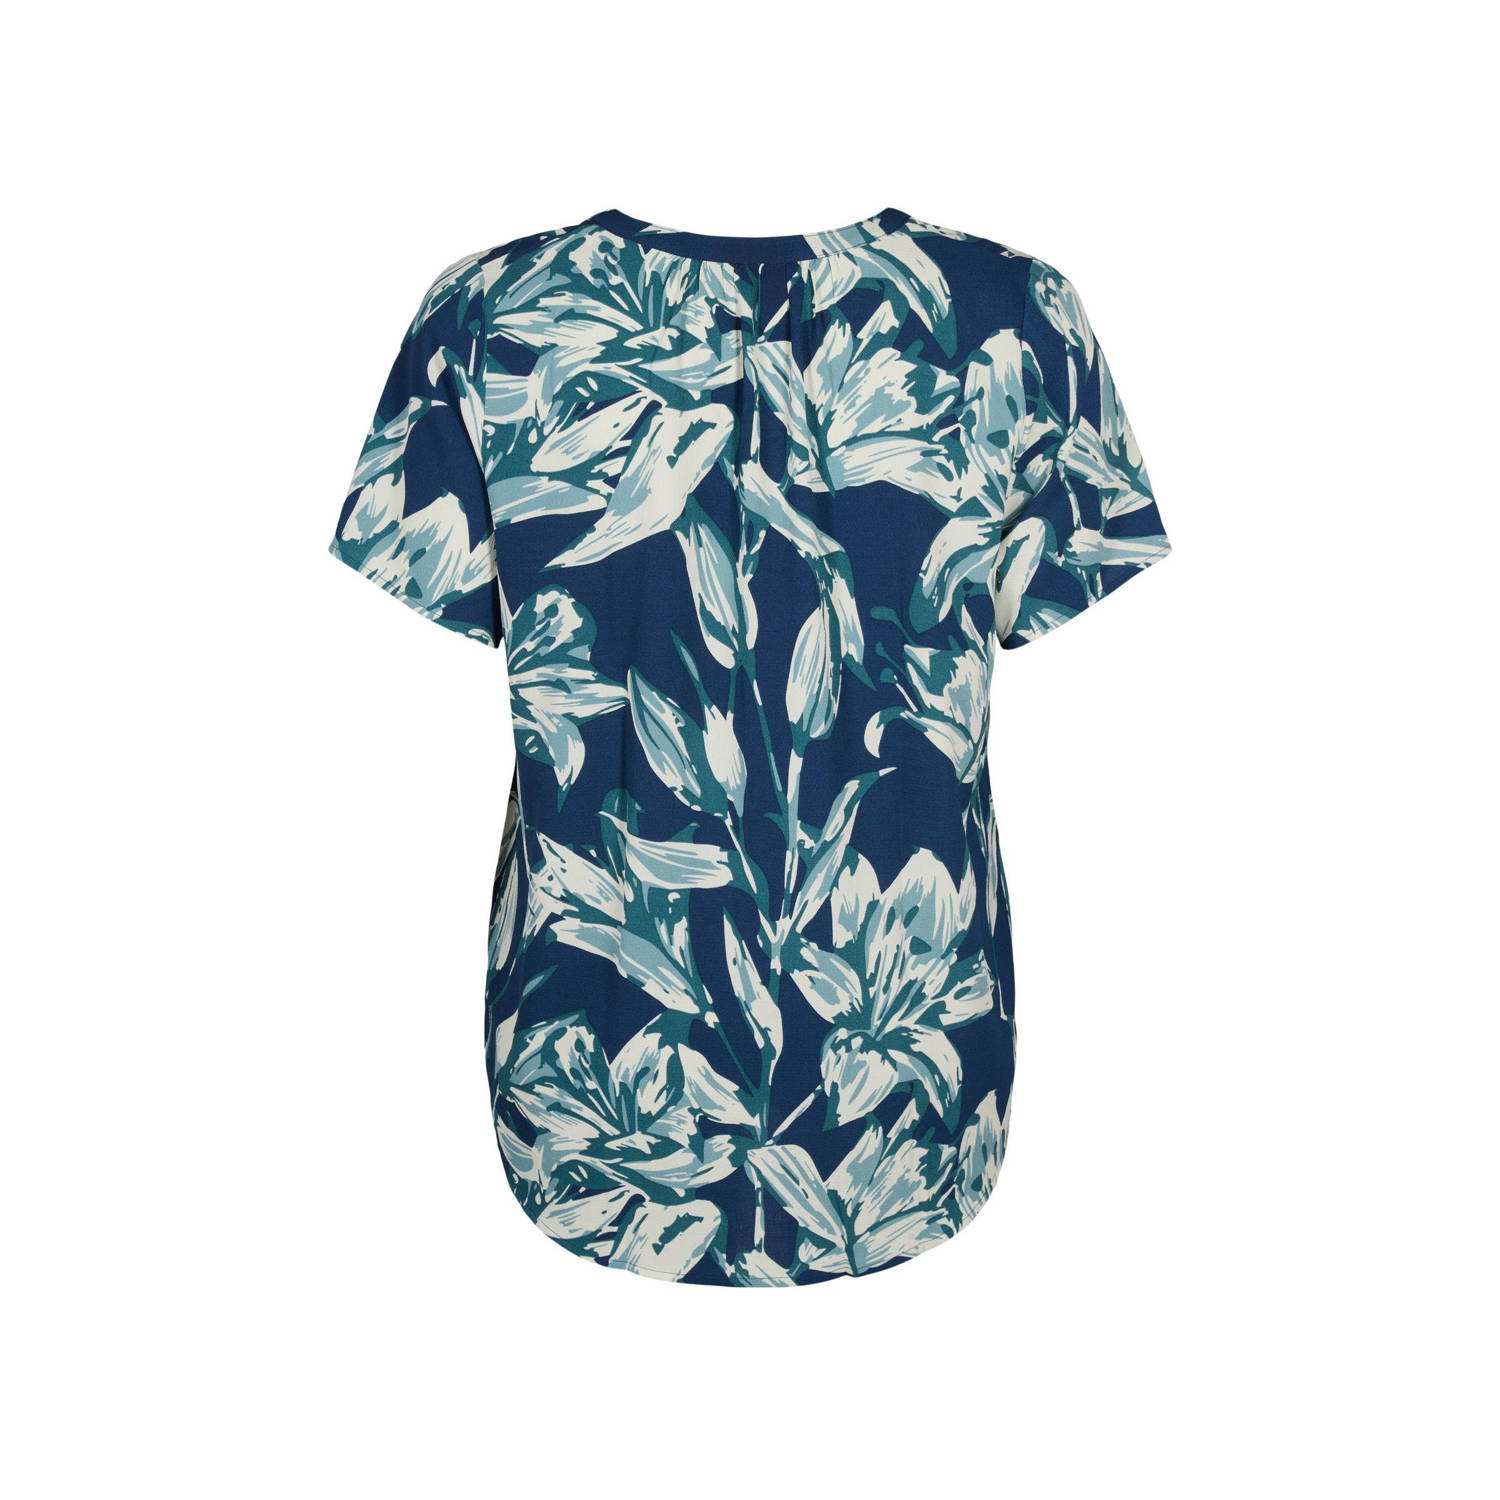 Zizzi blousetop met all over print blauw groen